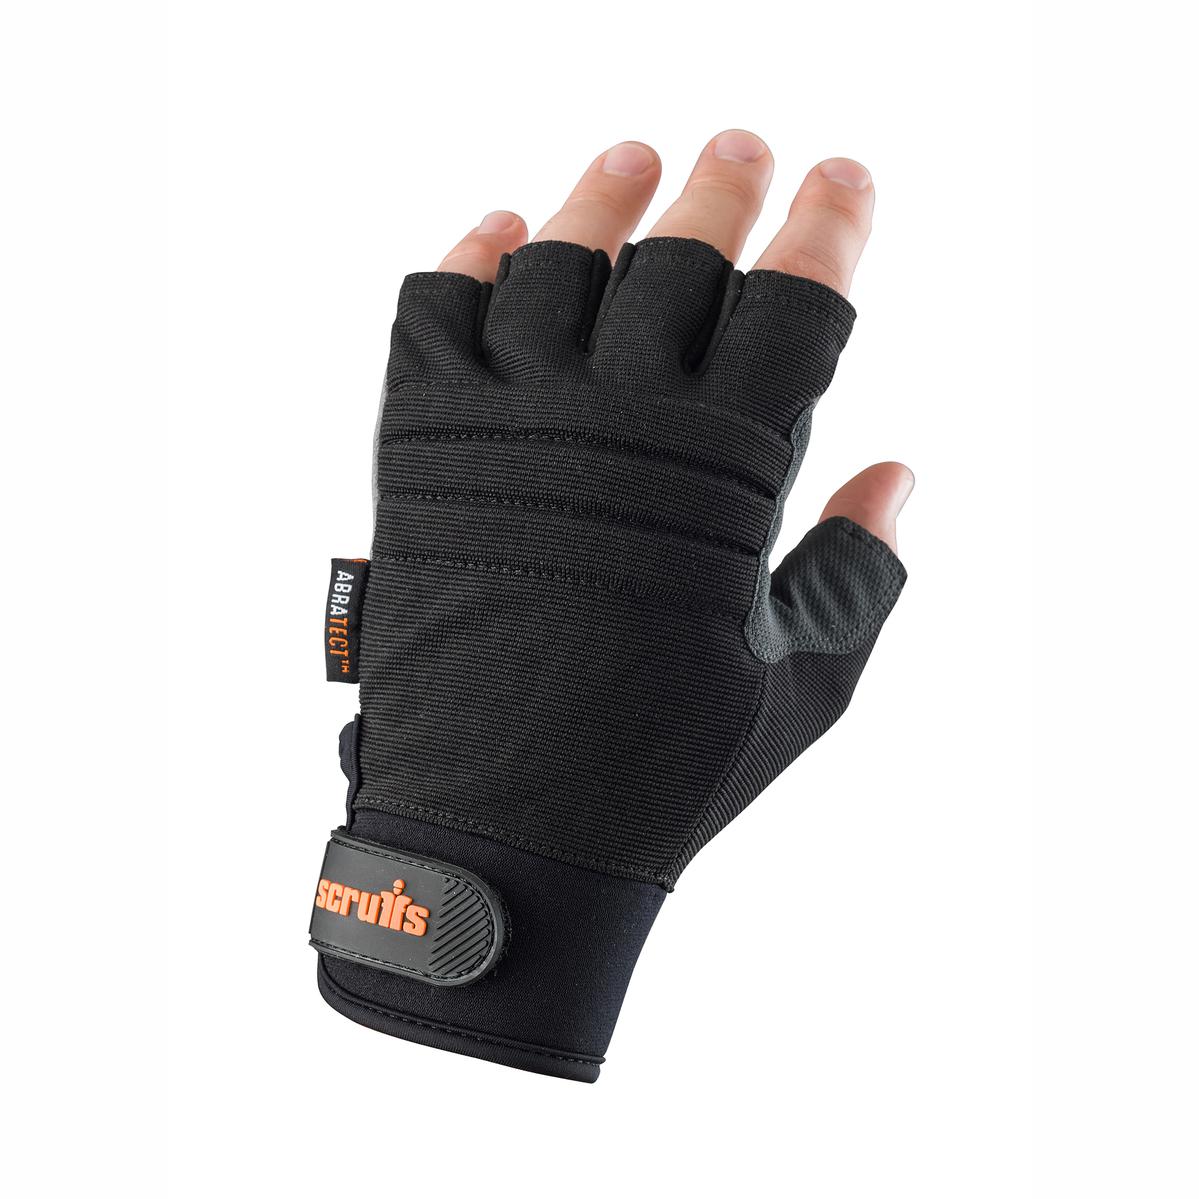 Scruffs Trade Fingerless Gloves